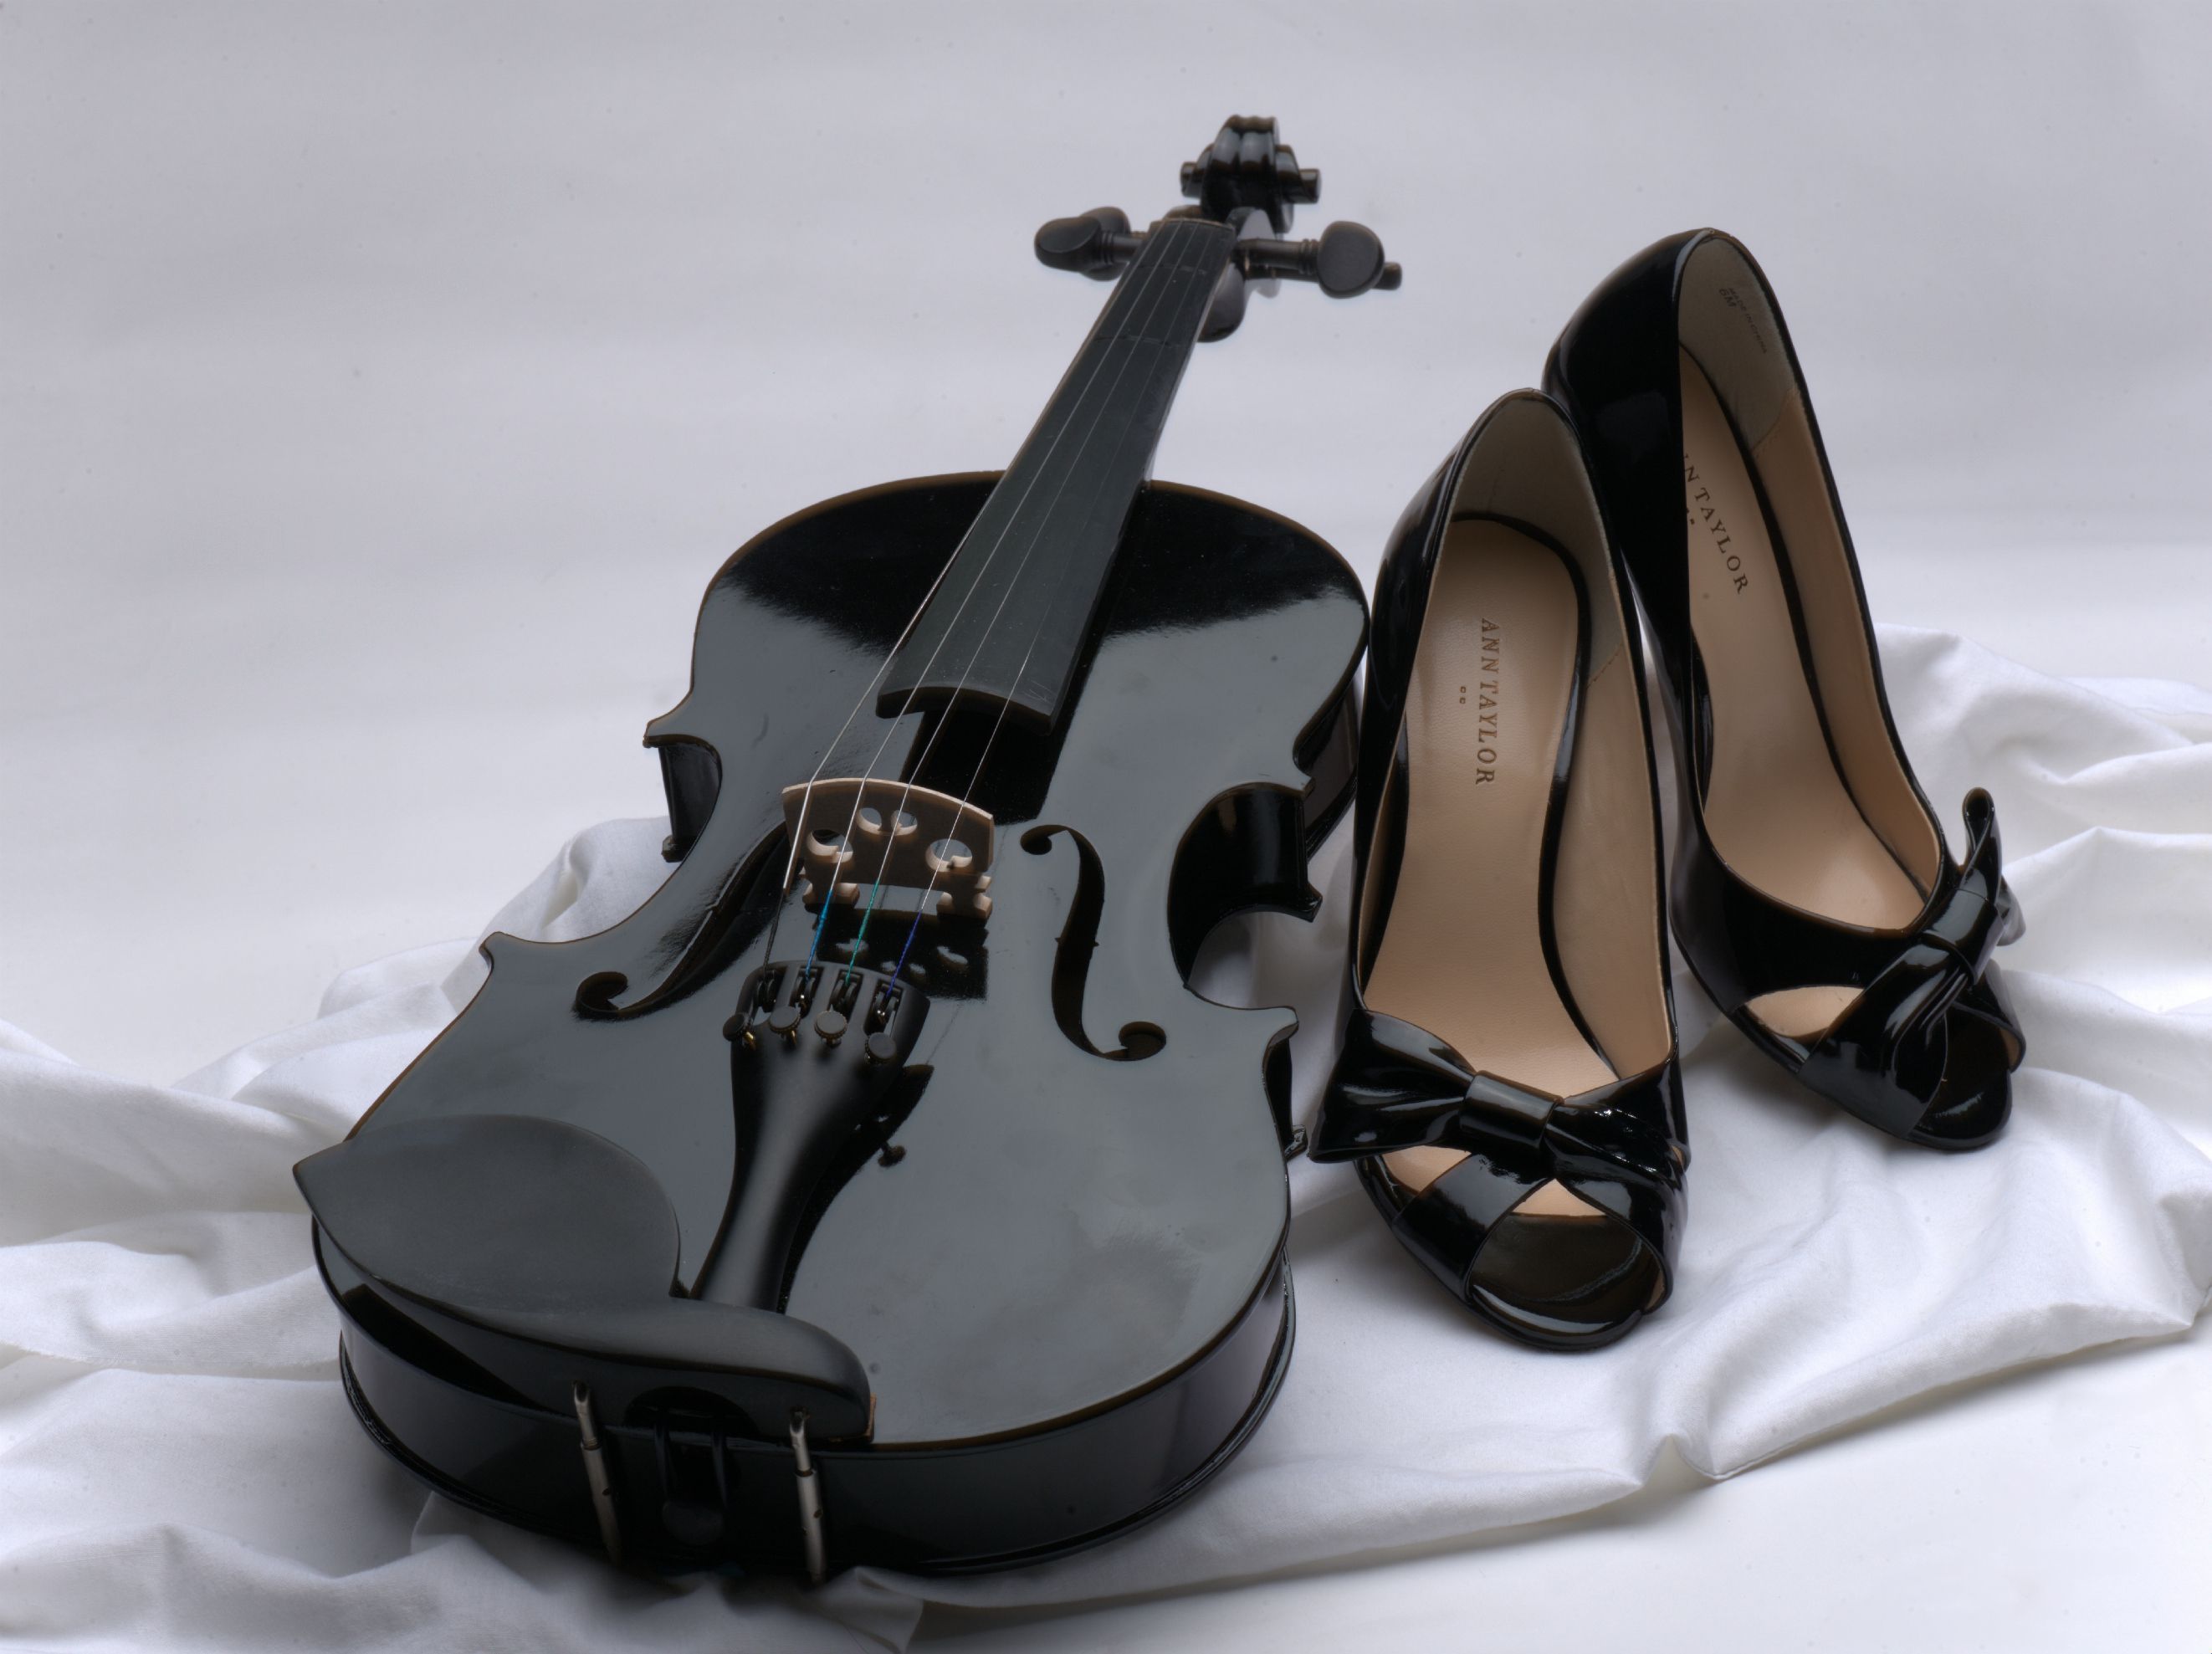 Violin - Lindsey Stirling's Black Violin , HD Wallpaper & Backgrounds